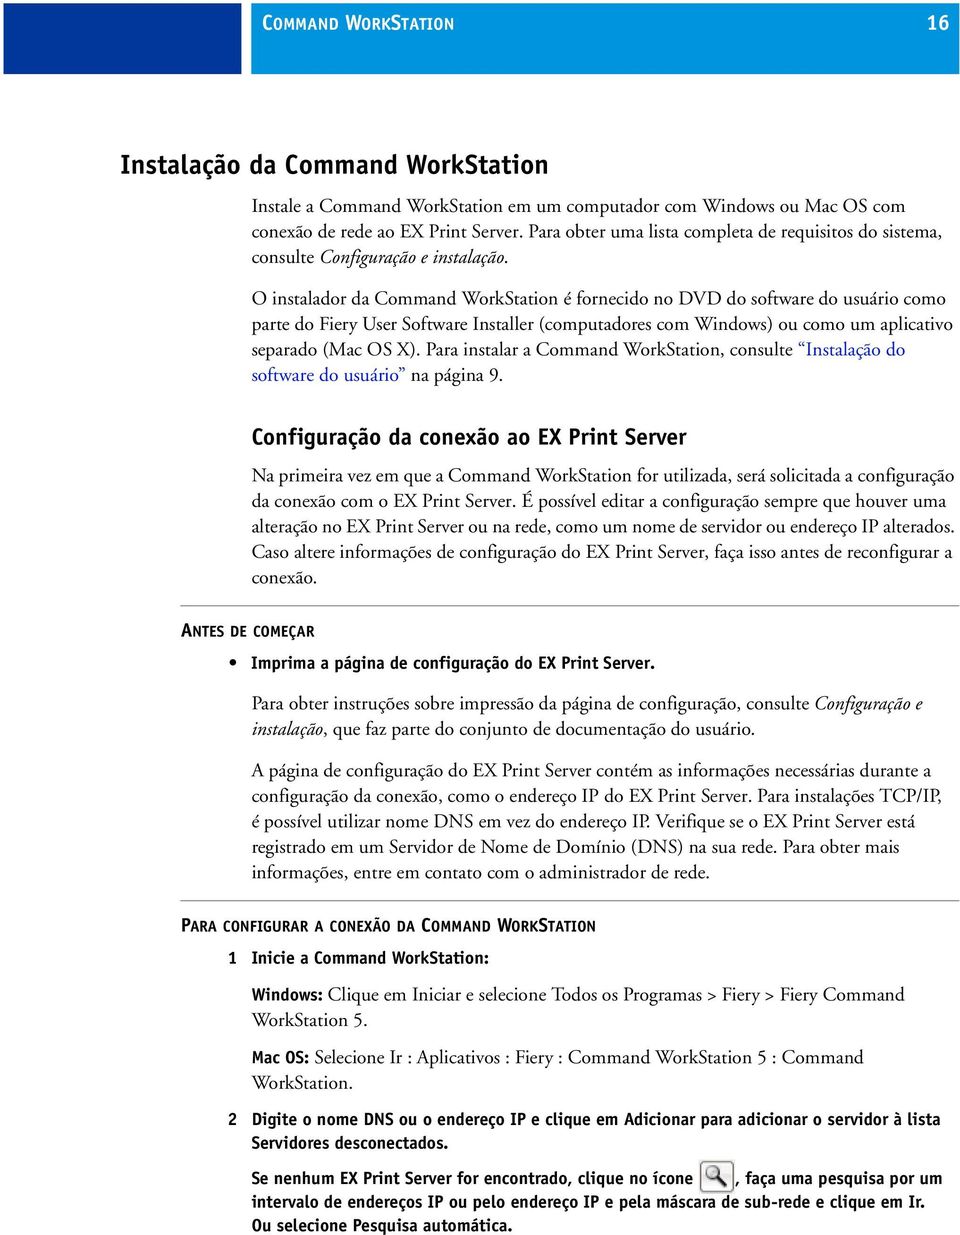 O instalador da Command WorkStation é fornecido no DVD do software do usuário como parte do Fiery User Software Installer (computadores com Windows) ou como um aplicativo separado (Mac OS X).